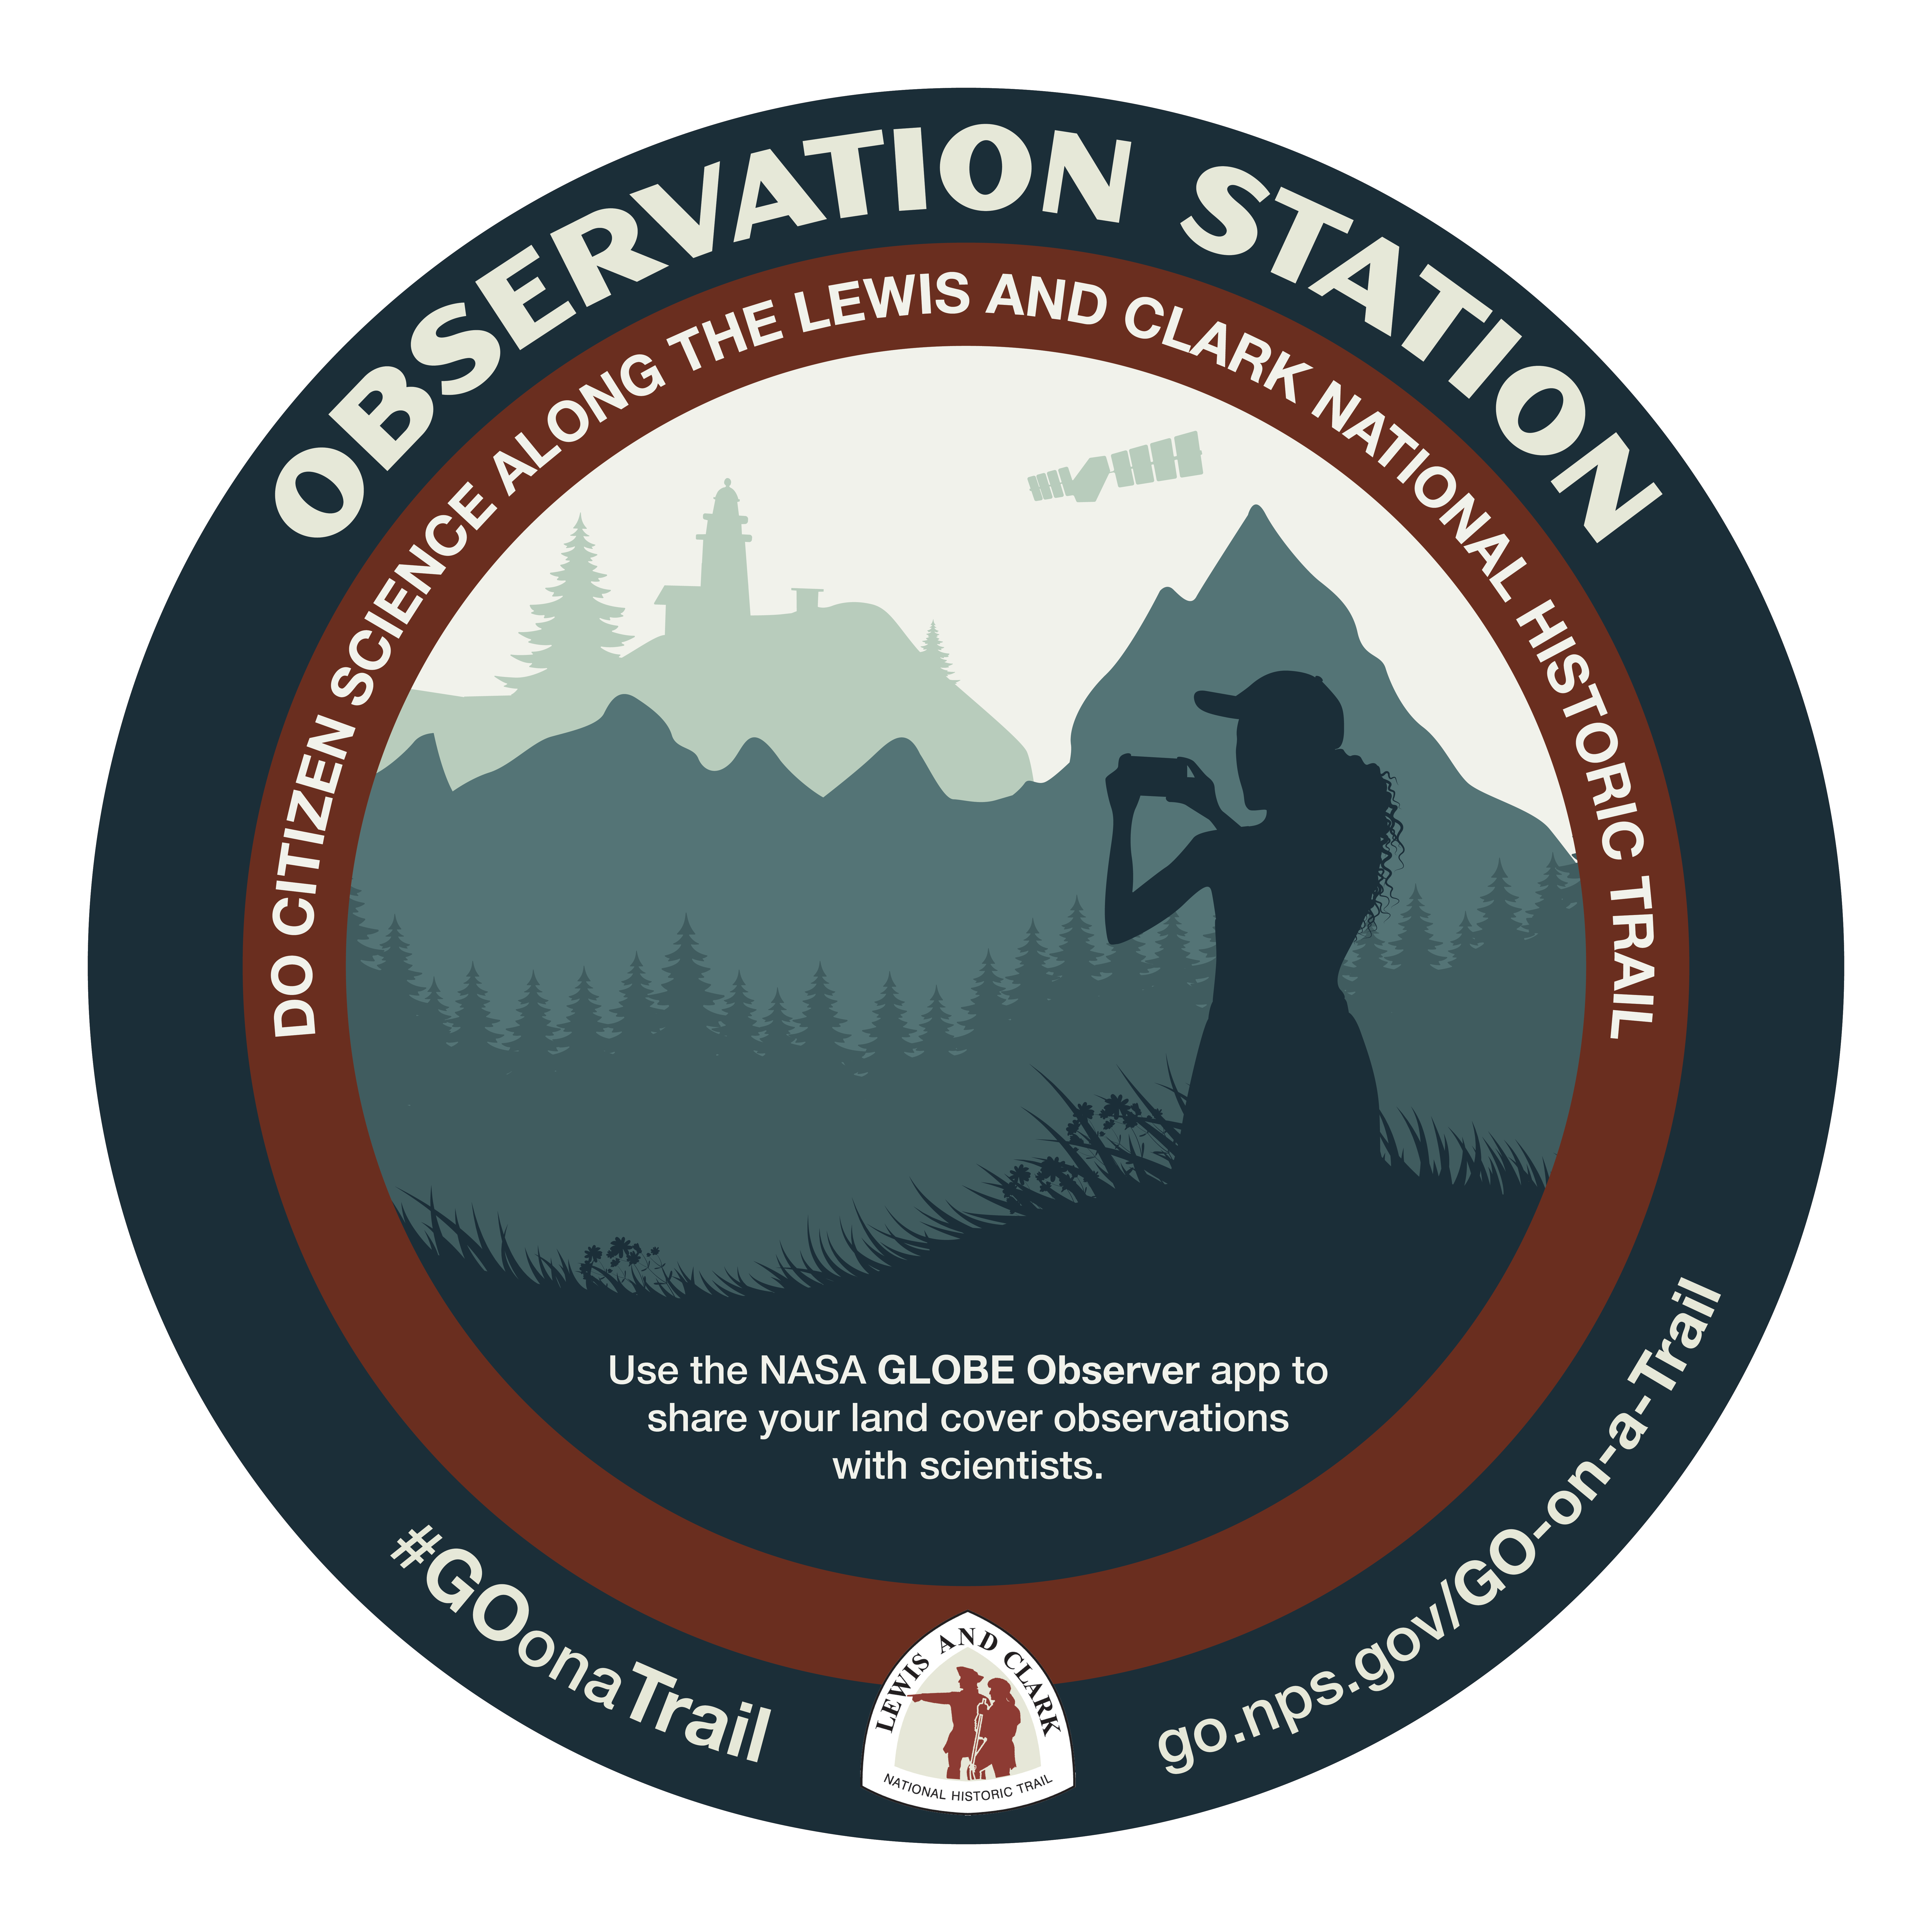 Observation Station